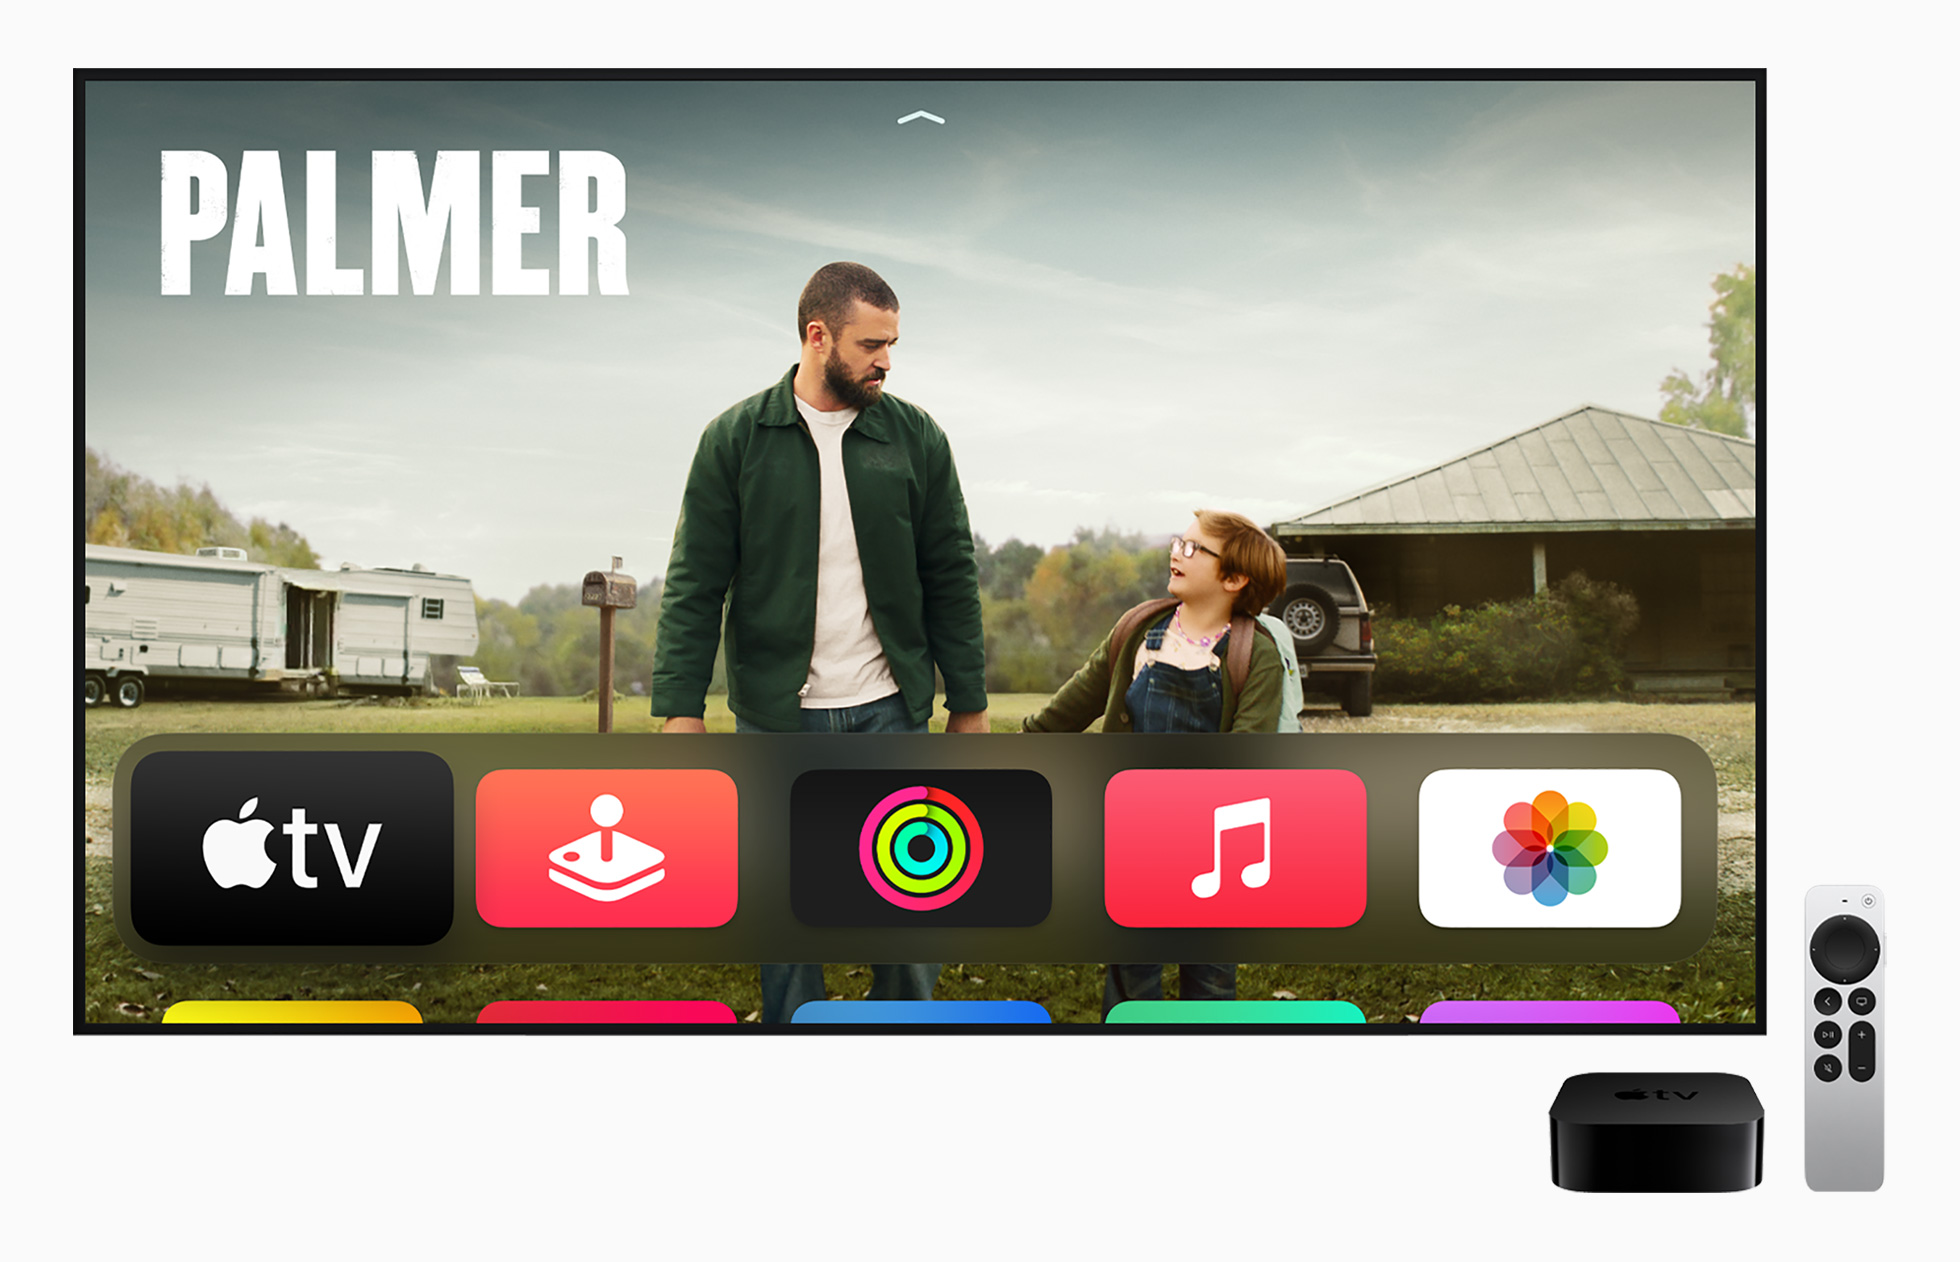 voorzichtig kop output Review Apple TV 4K 2021 mediaspeler van Apple